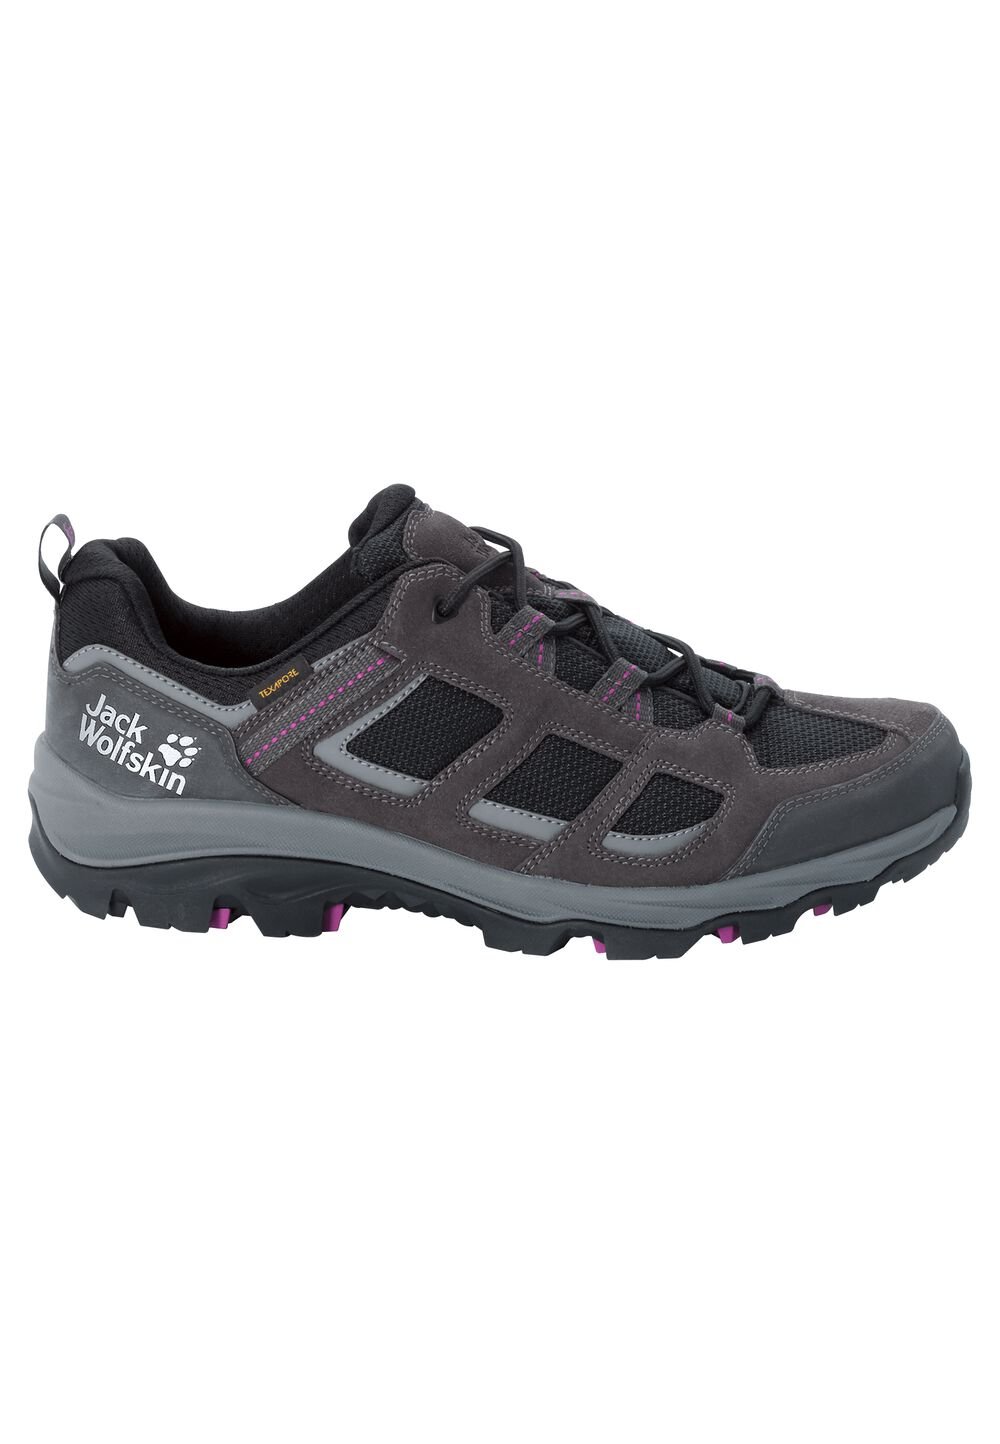 Chaussures de randonnée imperméables femmes Vojo 3 Texapore Low Women 4 gris dark steel / purple